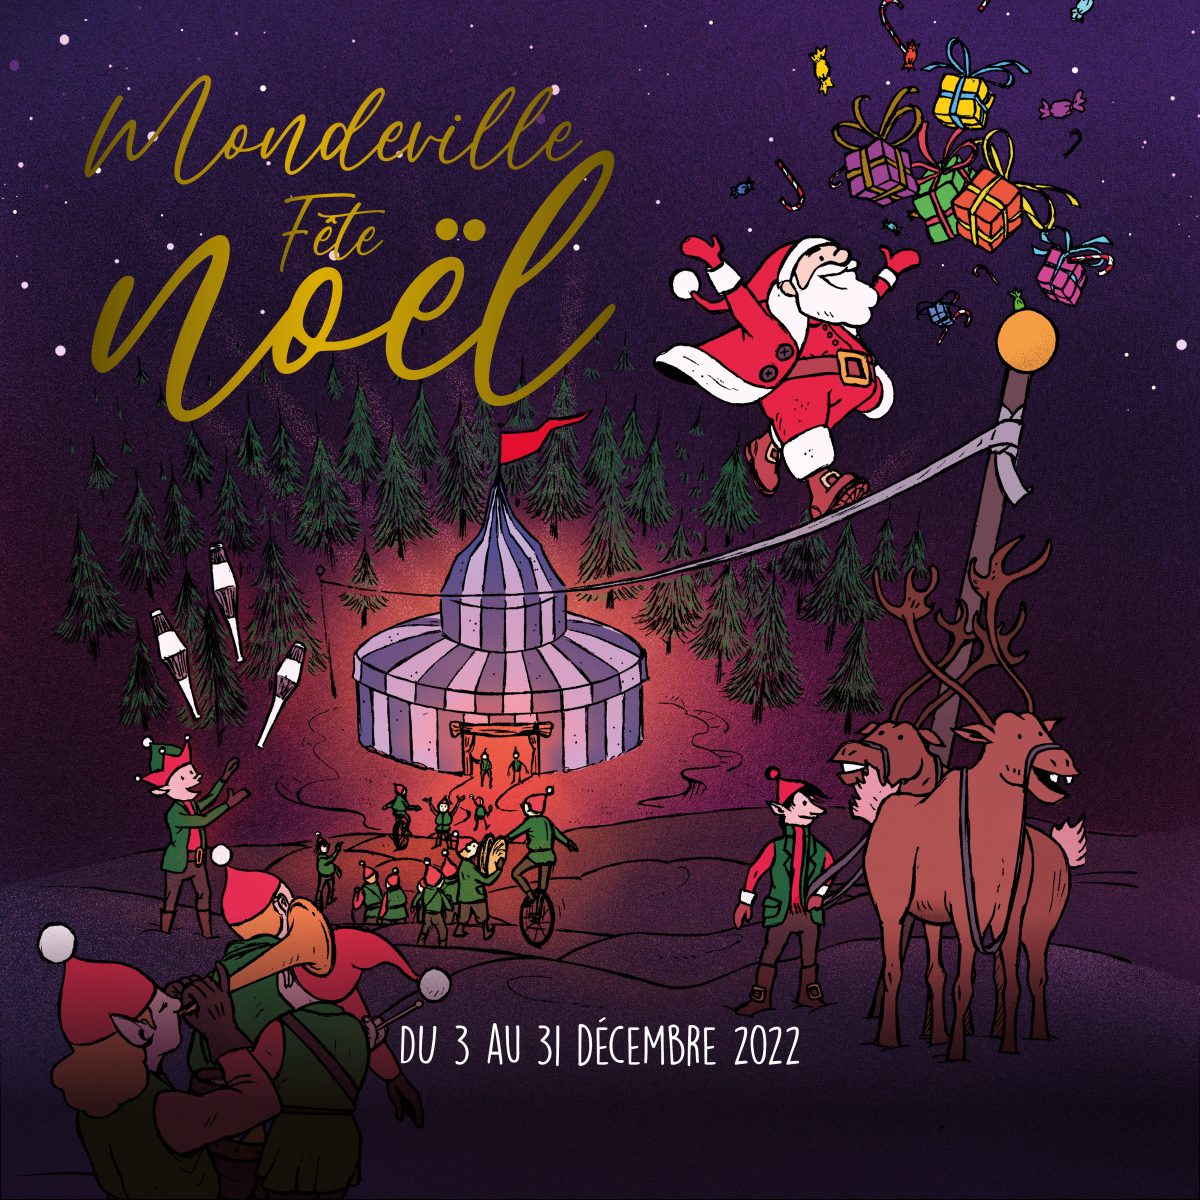 Mondeville fête Noël | Découvrez tout le programme des fêtes de fin d’année !